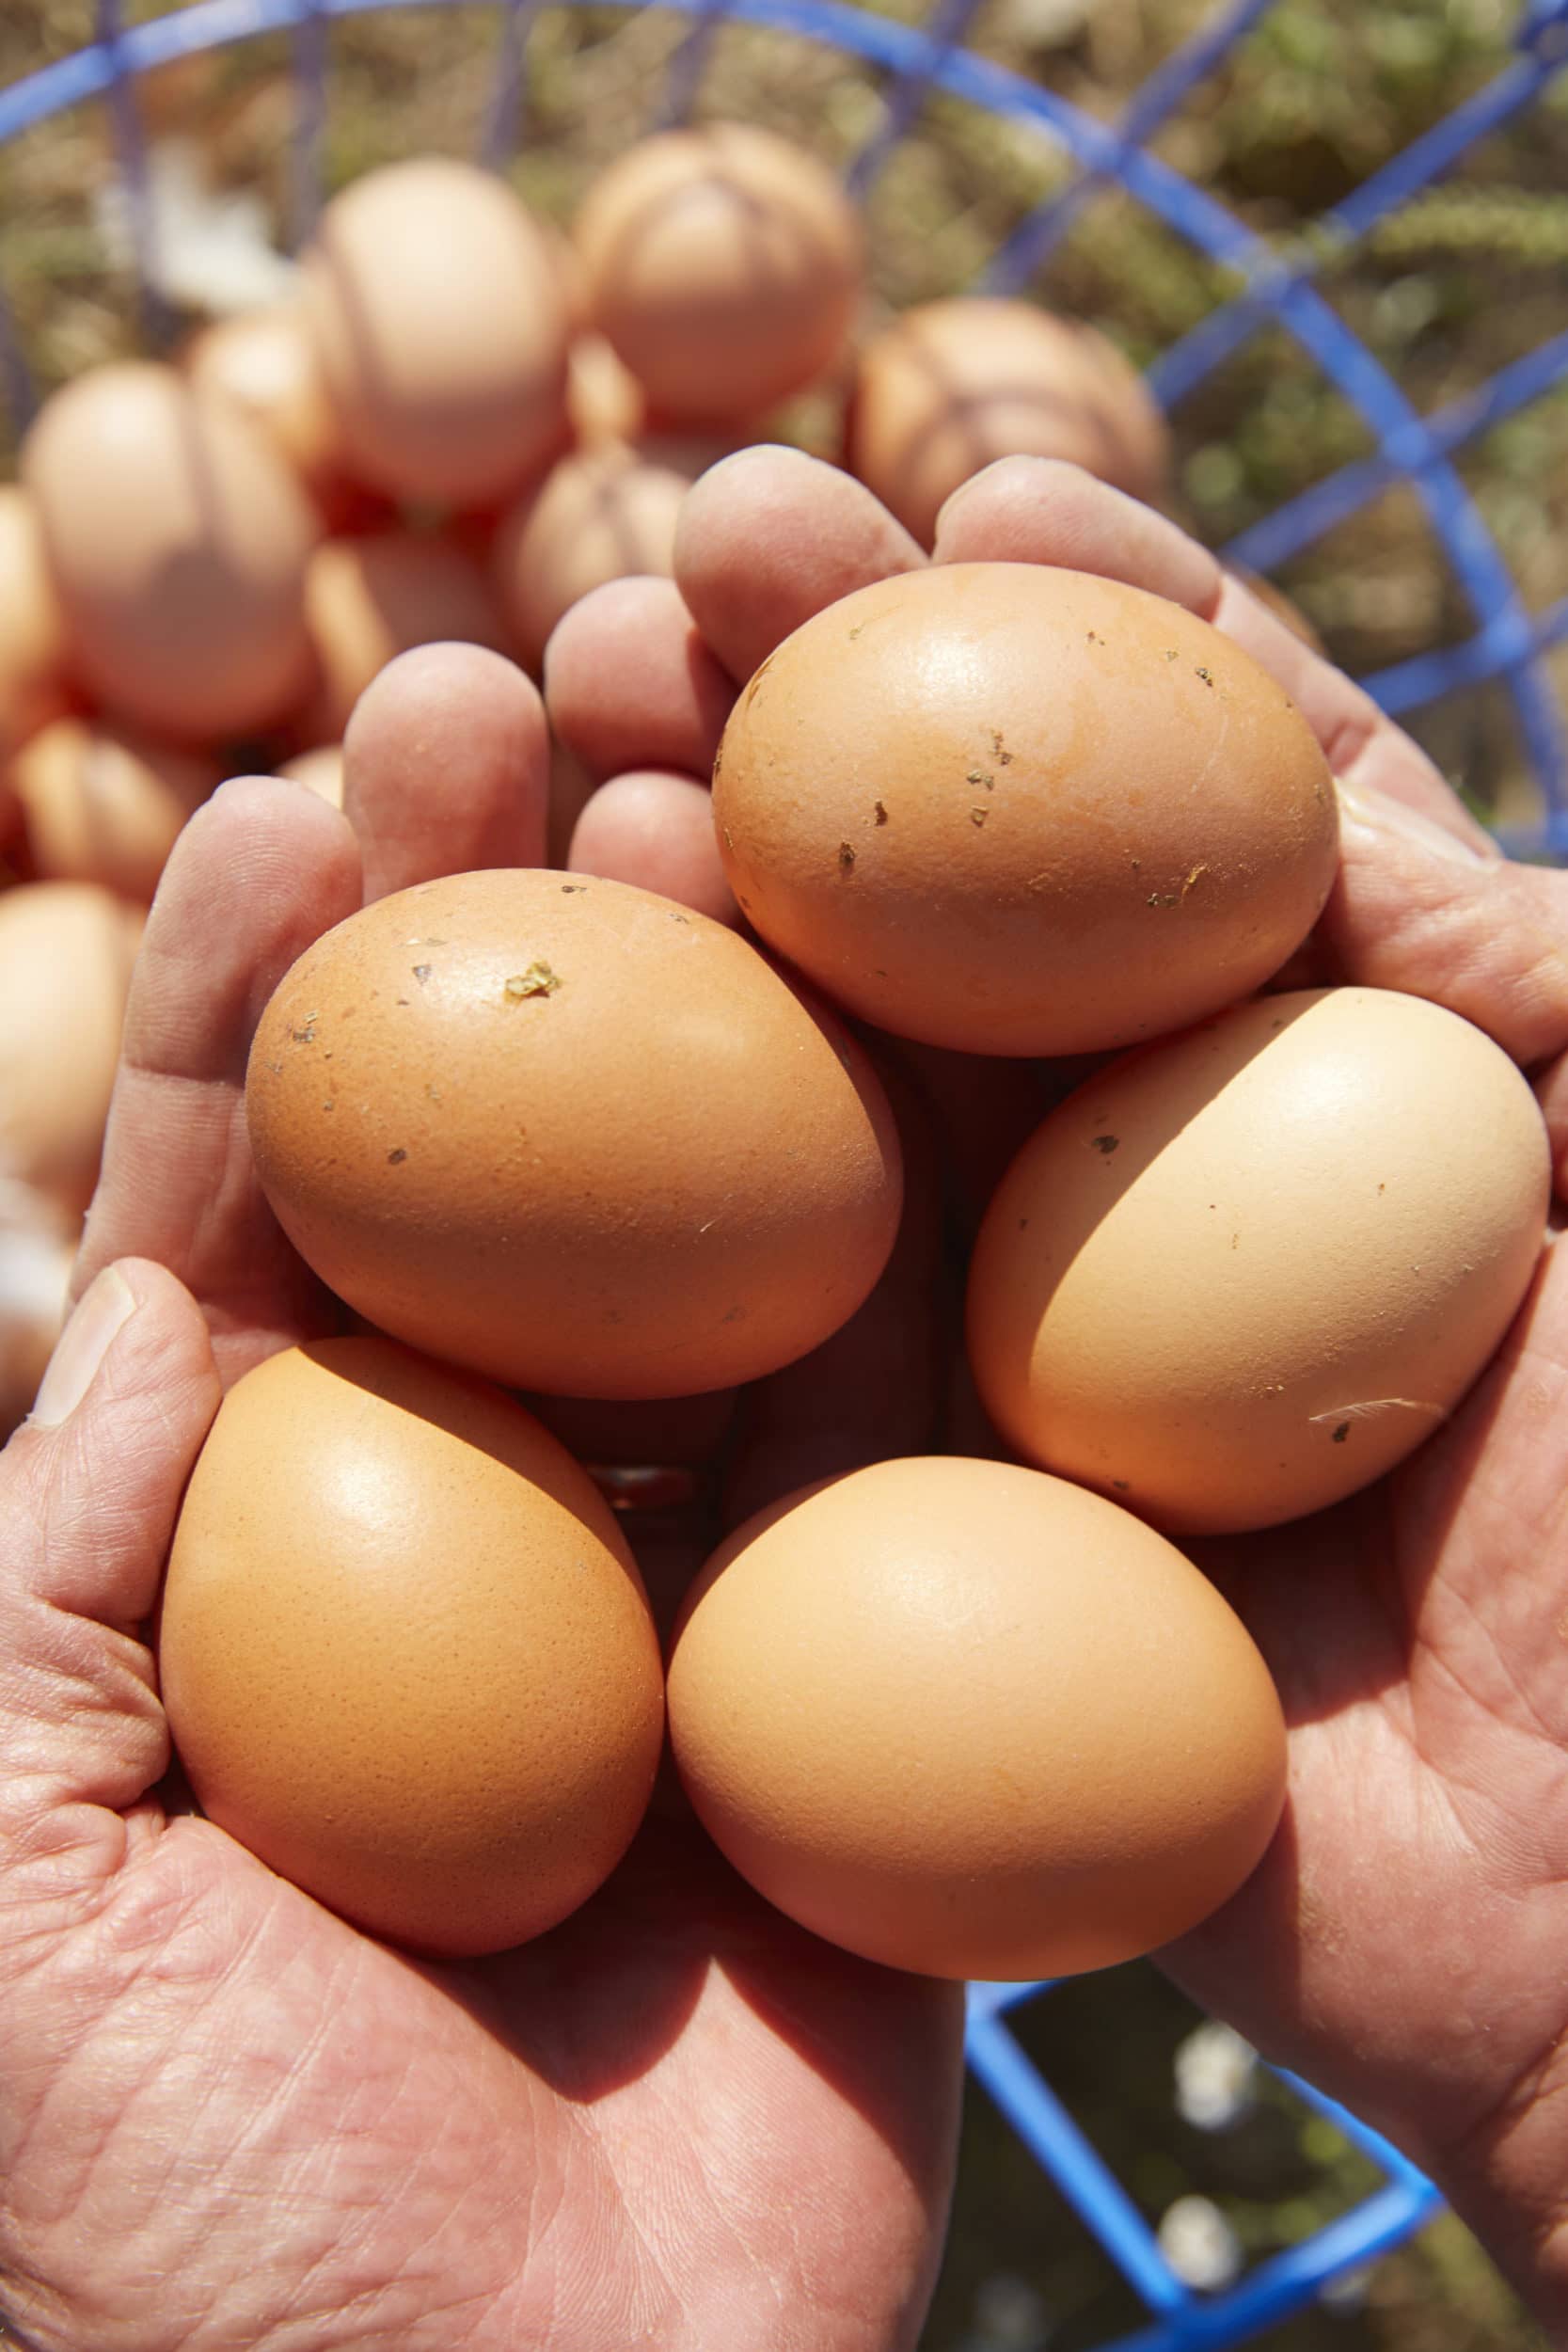 free range eggs-HelloFresh-farmer-happy-egg-co